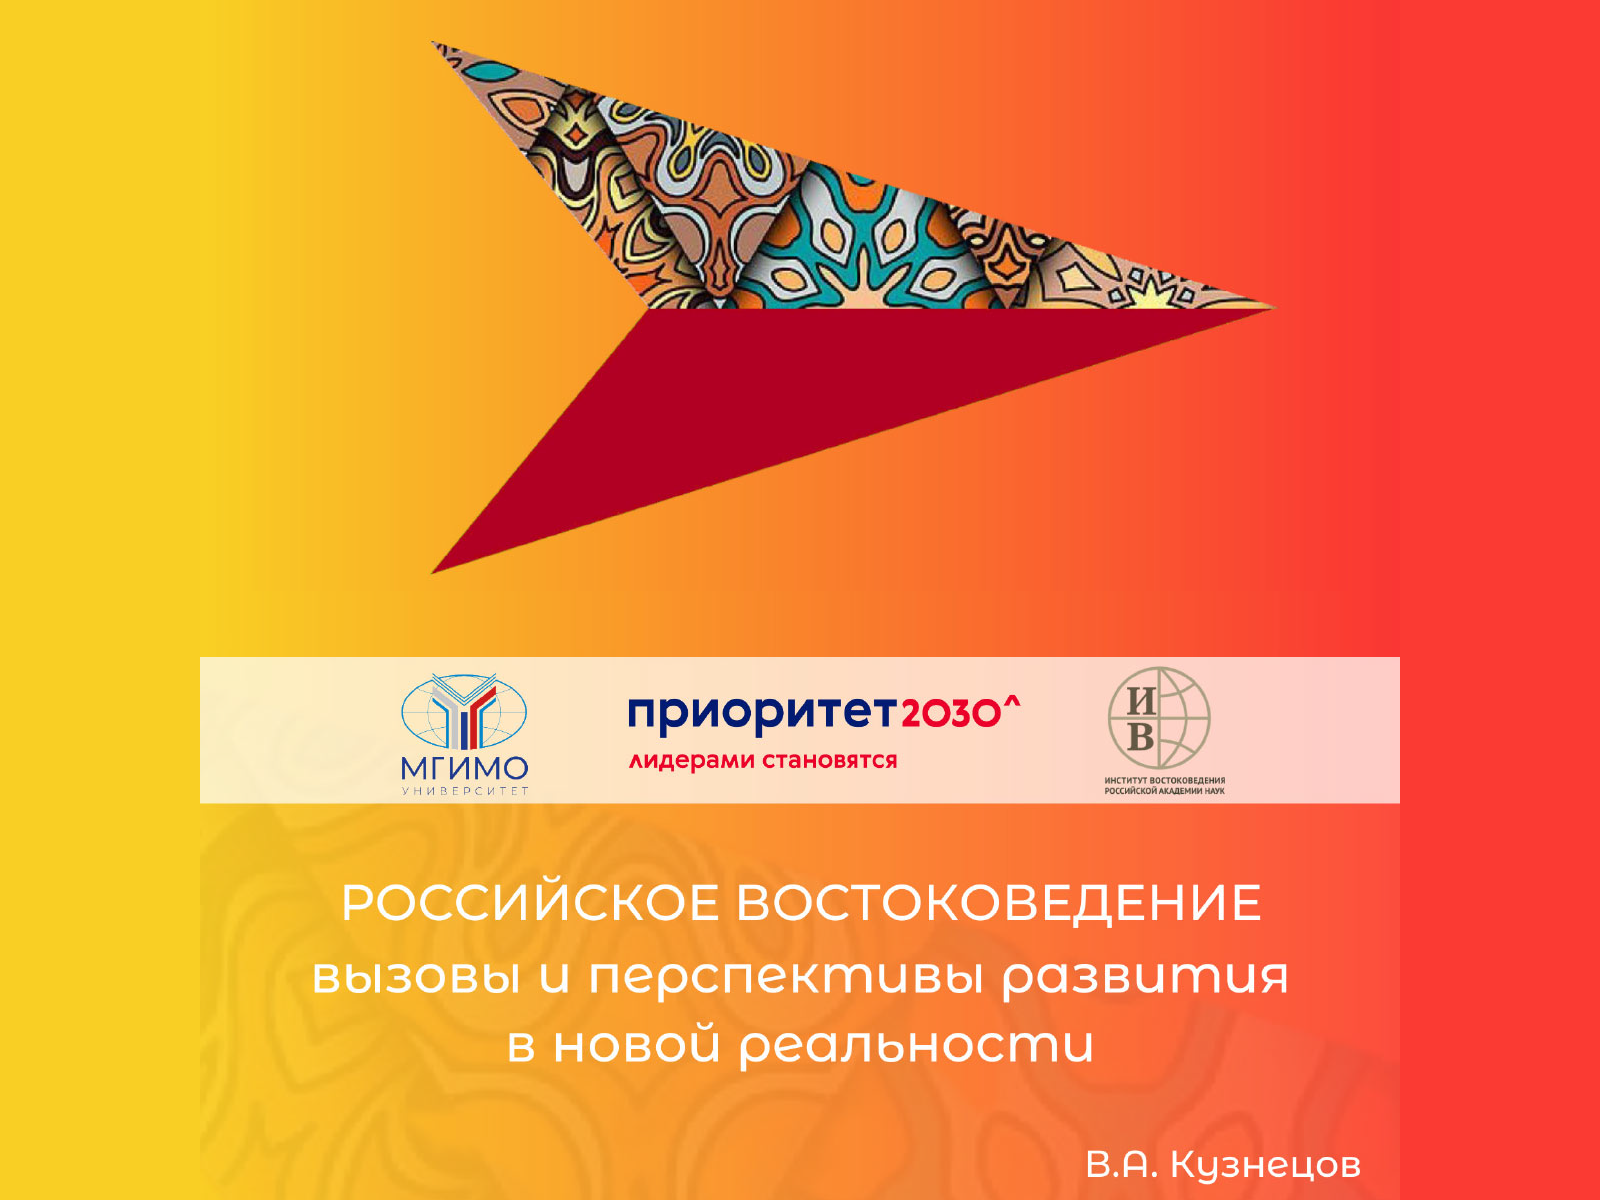 Доклад В.А. Кузнецова «Российское востоковедение: вызовы и перспективы развития в новой реальности»